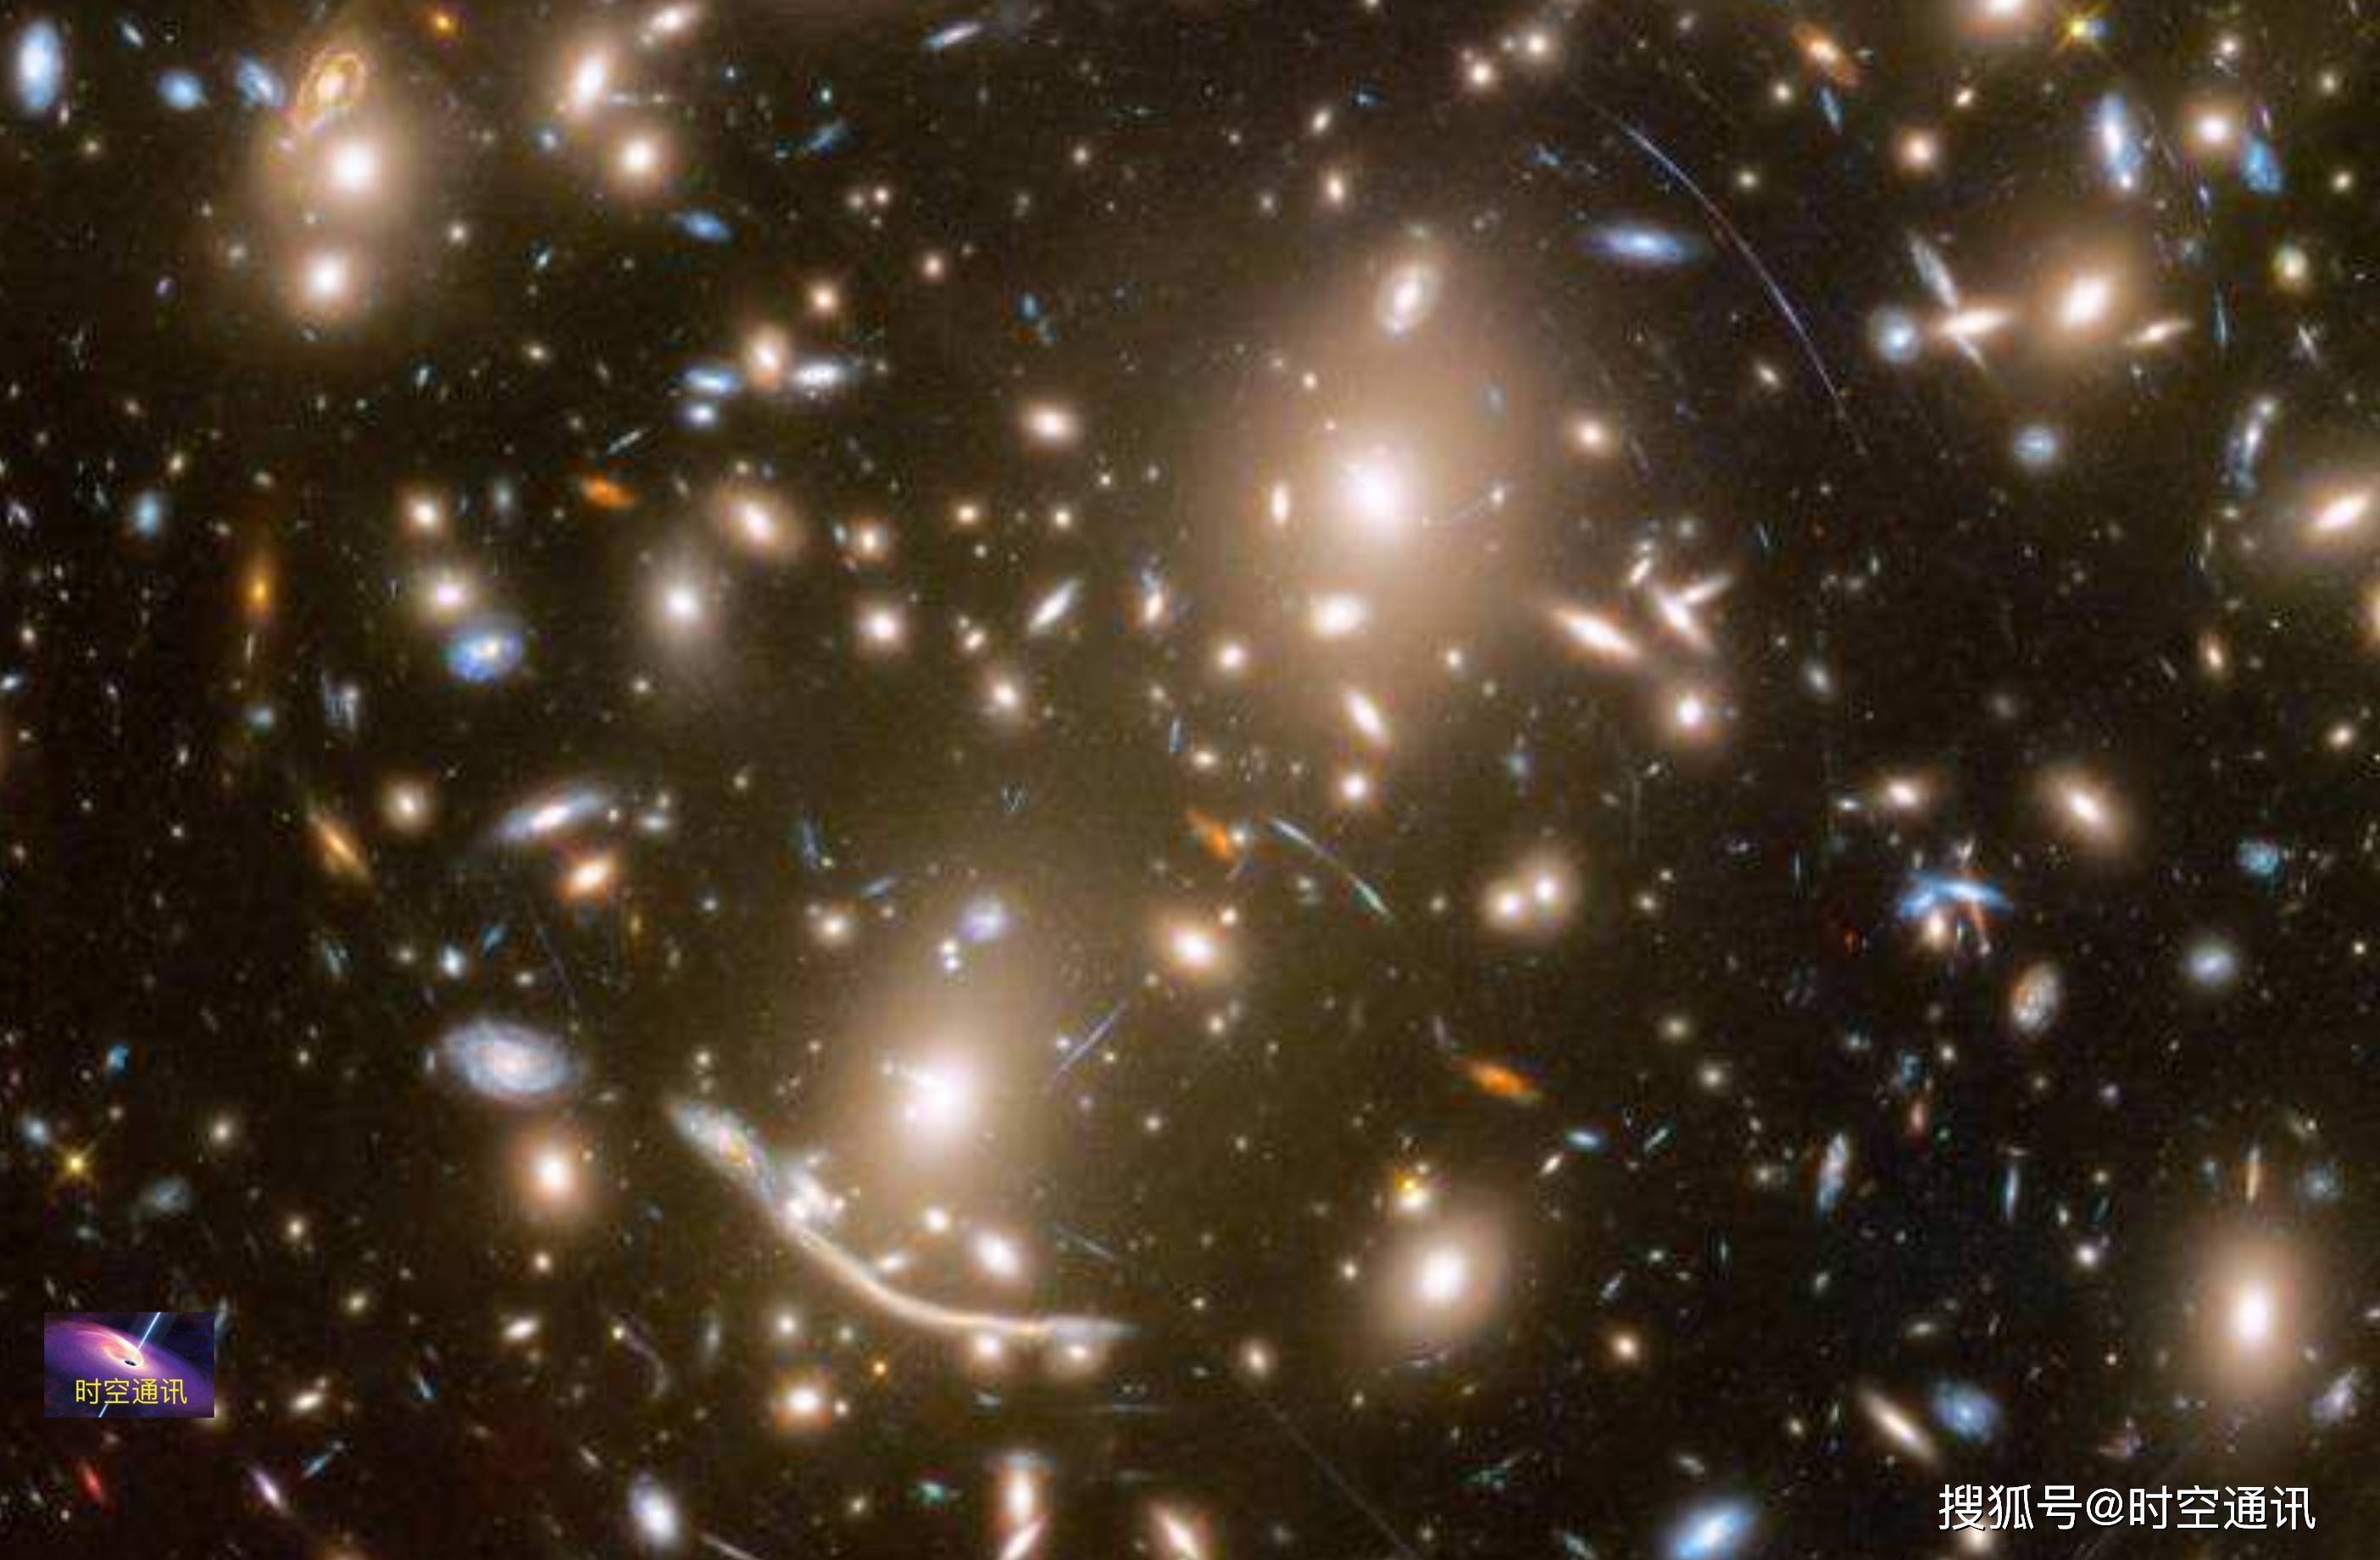 一是宇宙中有多少个银河系的问题